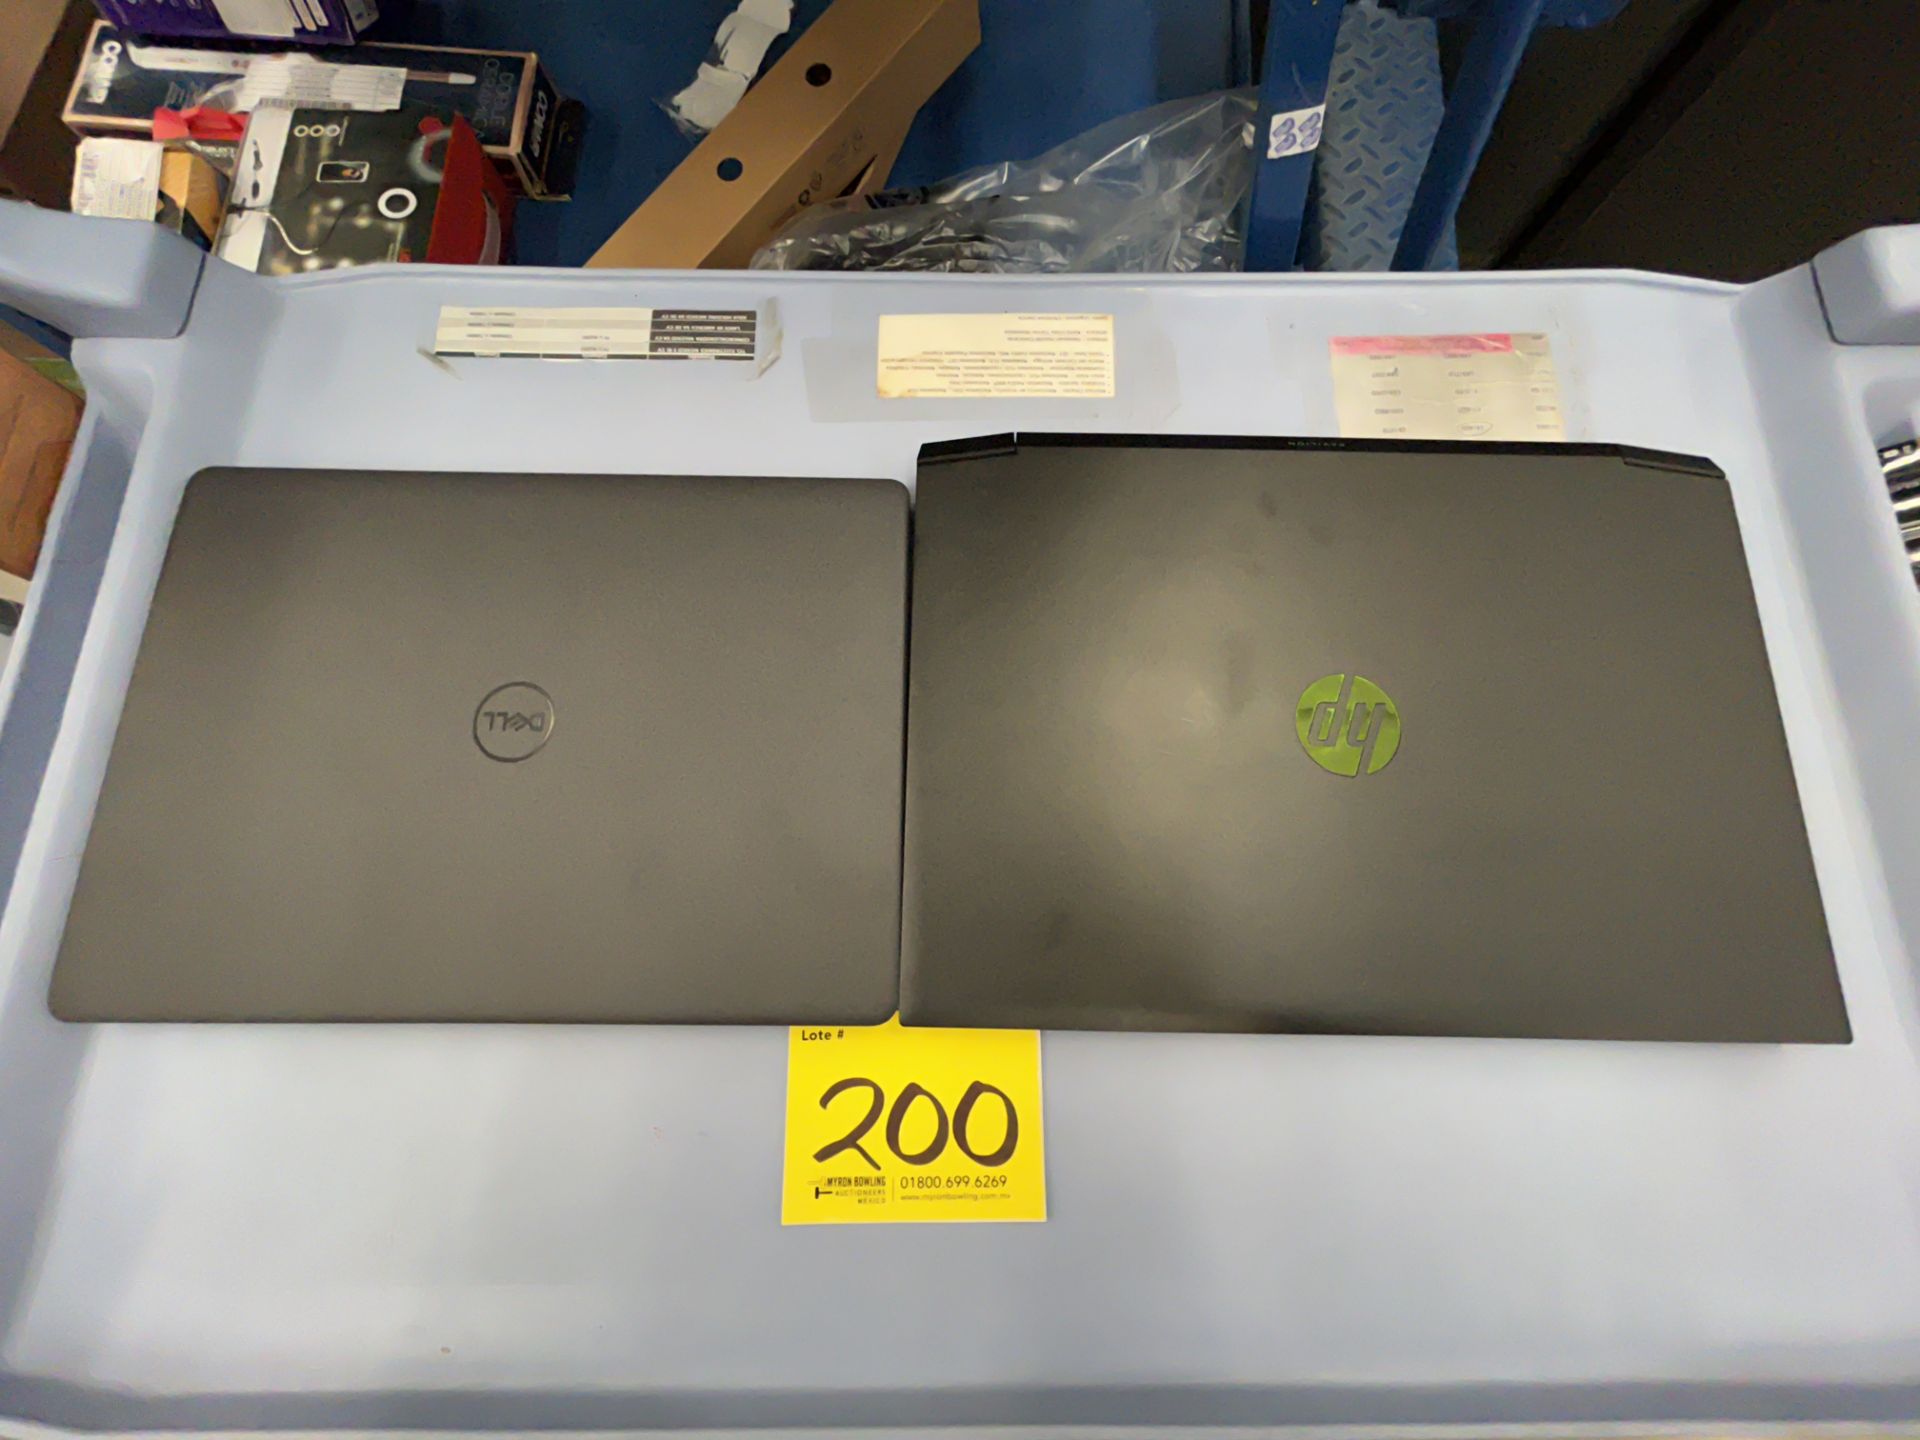 Lote de 2 laptops contiene: 1 laptop Marca DELL, Modelo VOSTRO 14, procesador AMD RADEON VEGA 8, 51 - Image 7 of 9